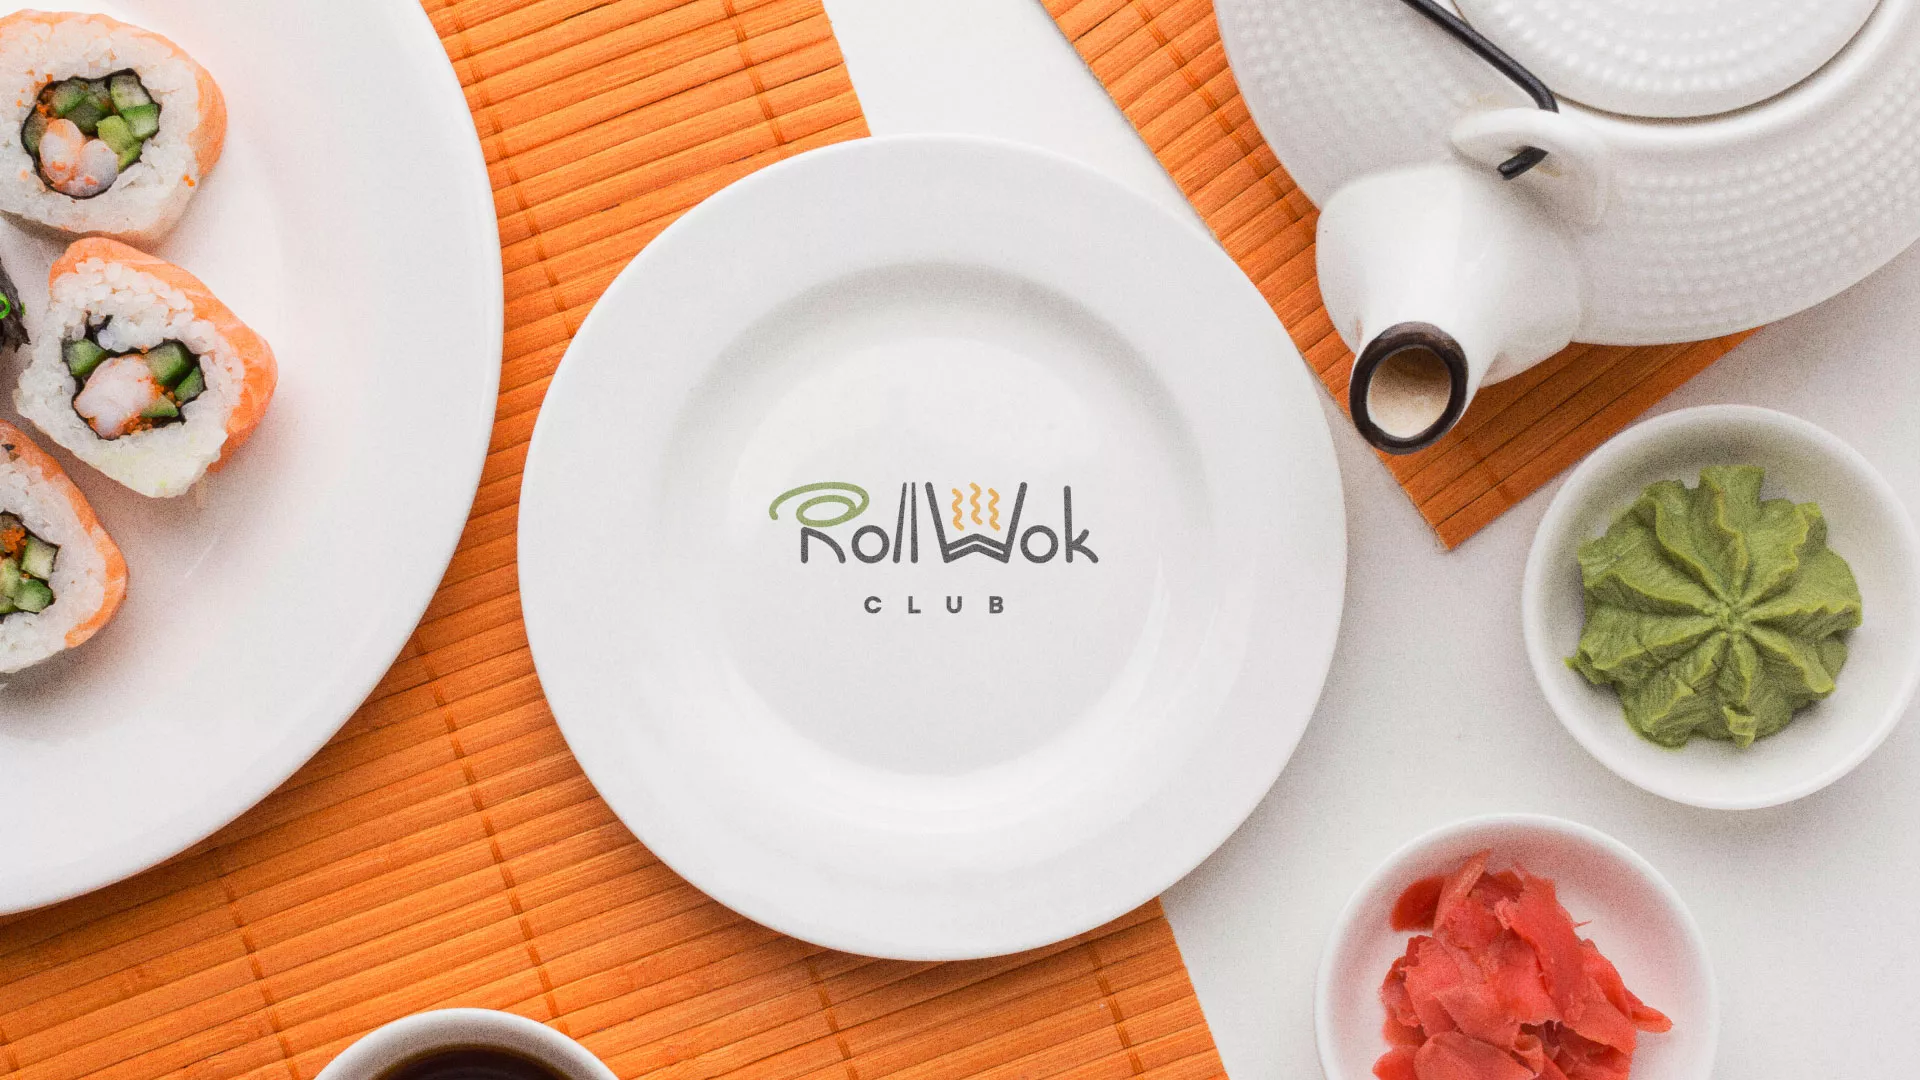 Разработка логотипа и фирменного стиля суши-бара «Roll Wok Club» в Элисте